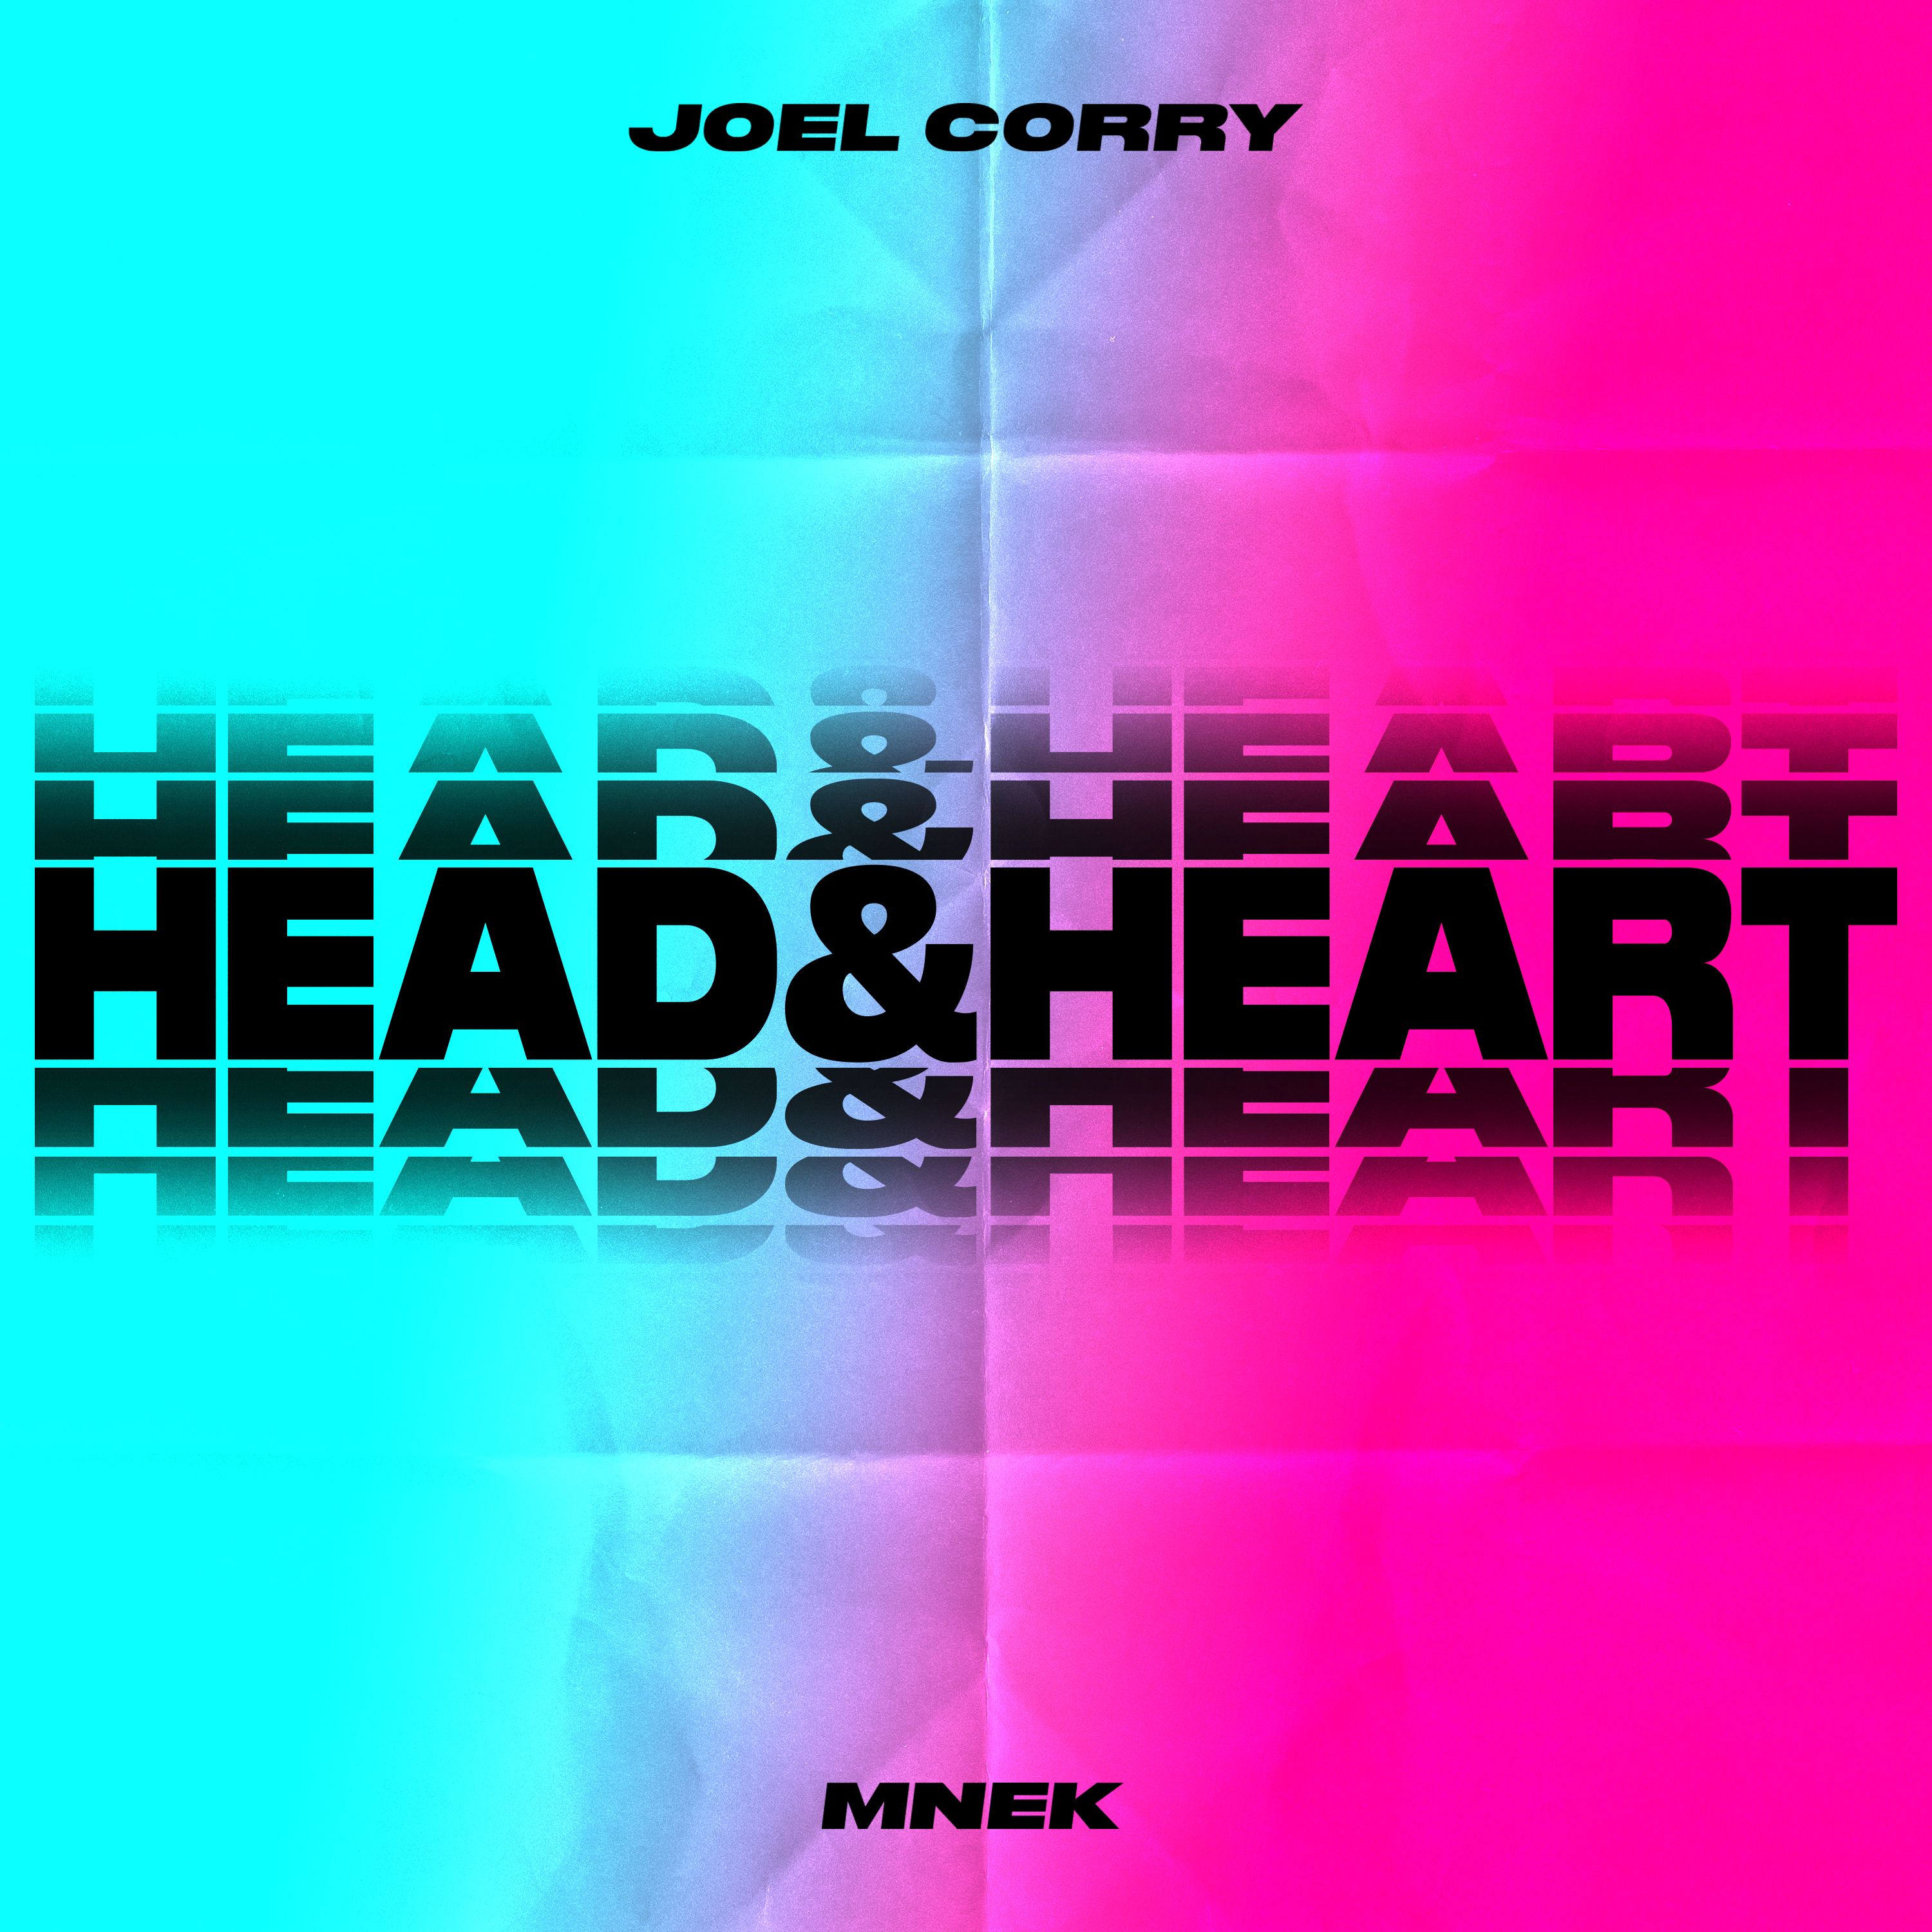 Pobierać Joel Corry x MNEK - Head & Heart (Extended Mix)